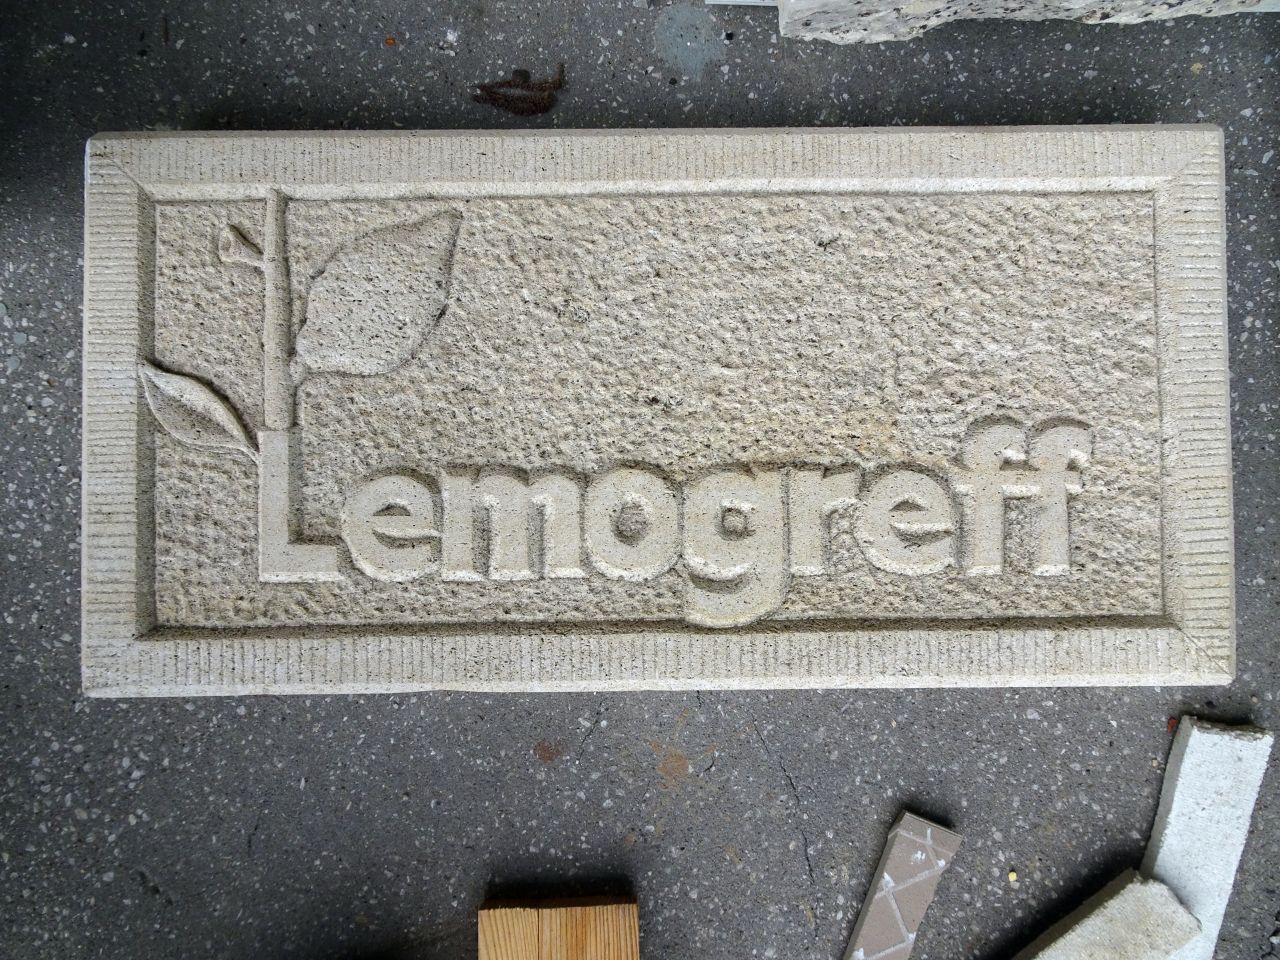 Lemogreff Interim Management